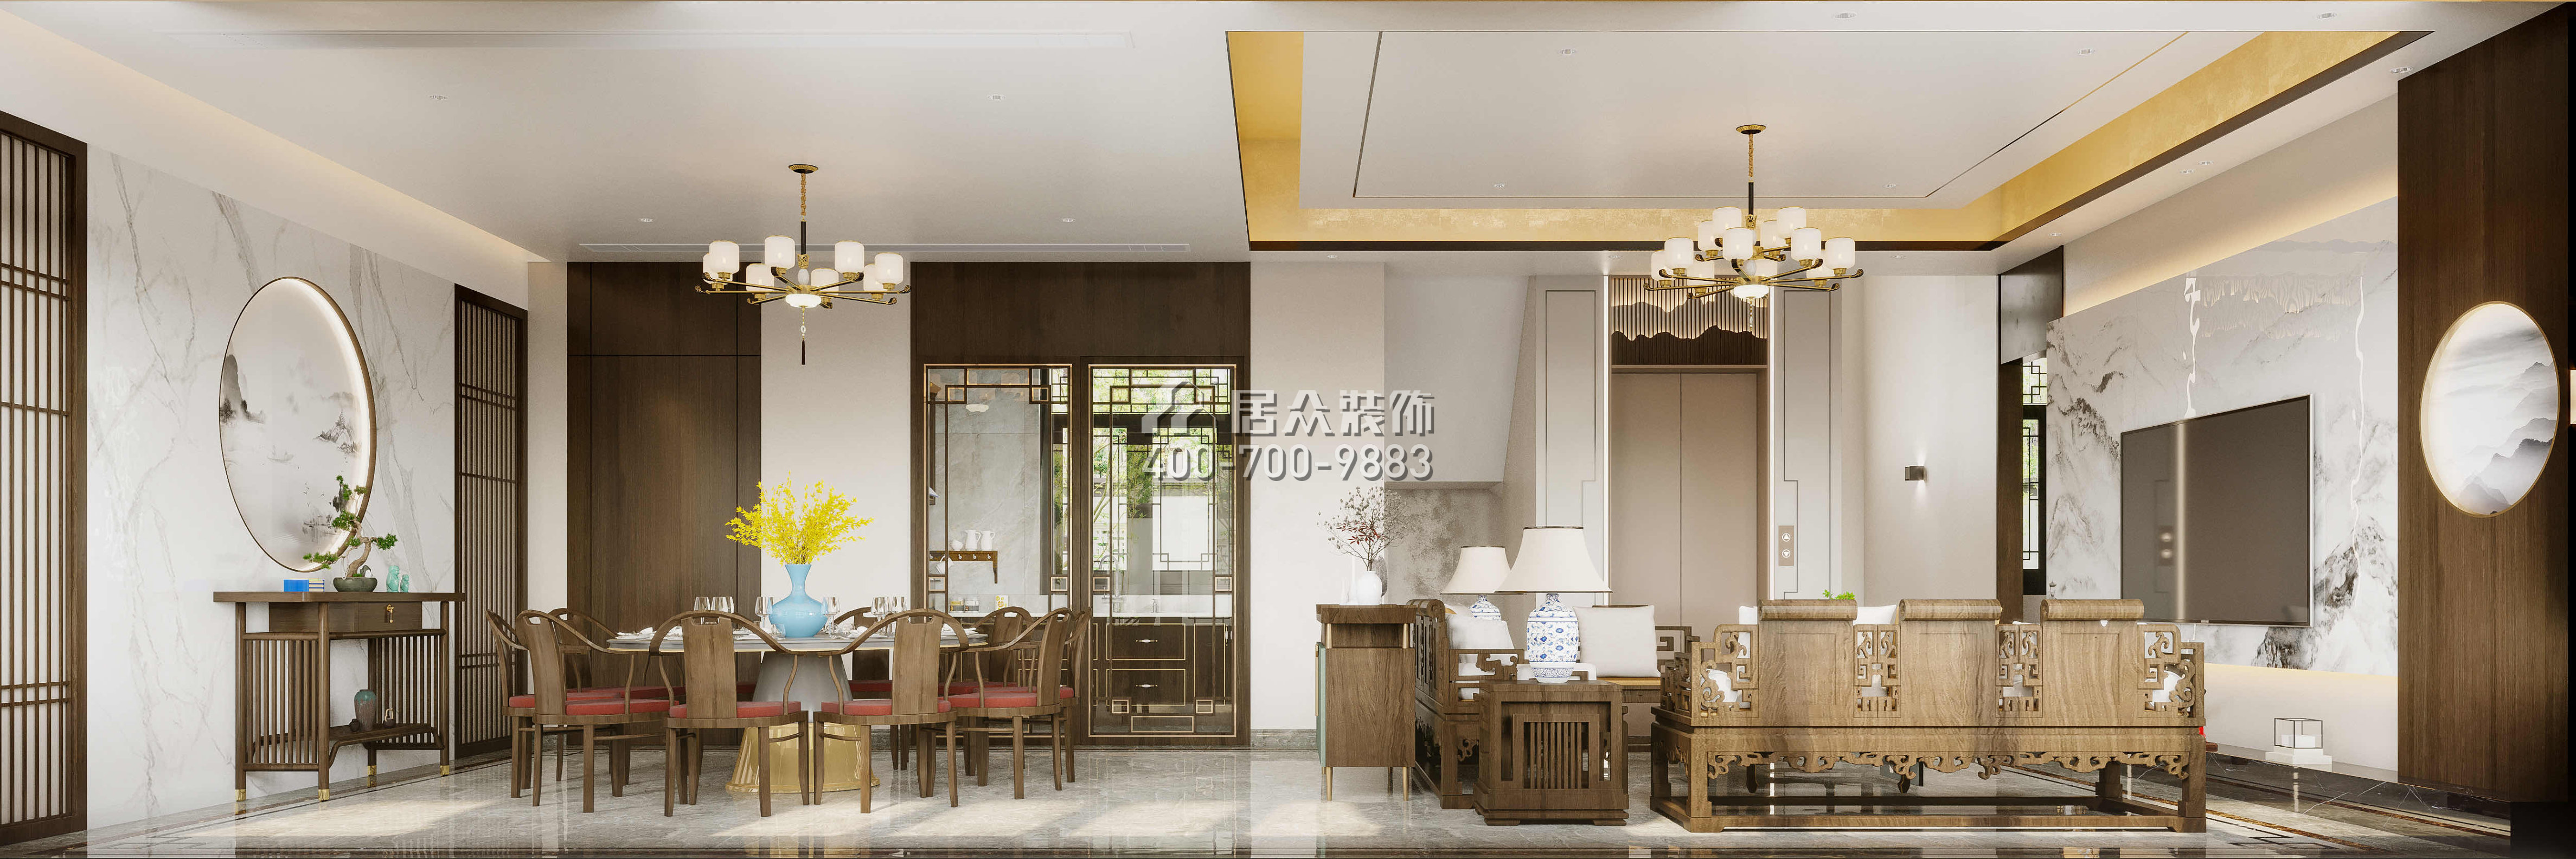 翠湖香山桃花源480平方米中式风格别墅户型客餐厅一体装修效果图